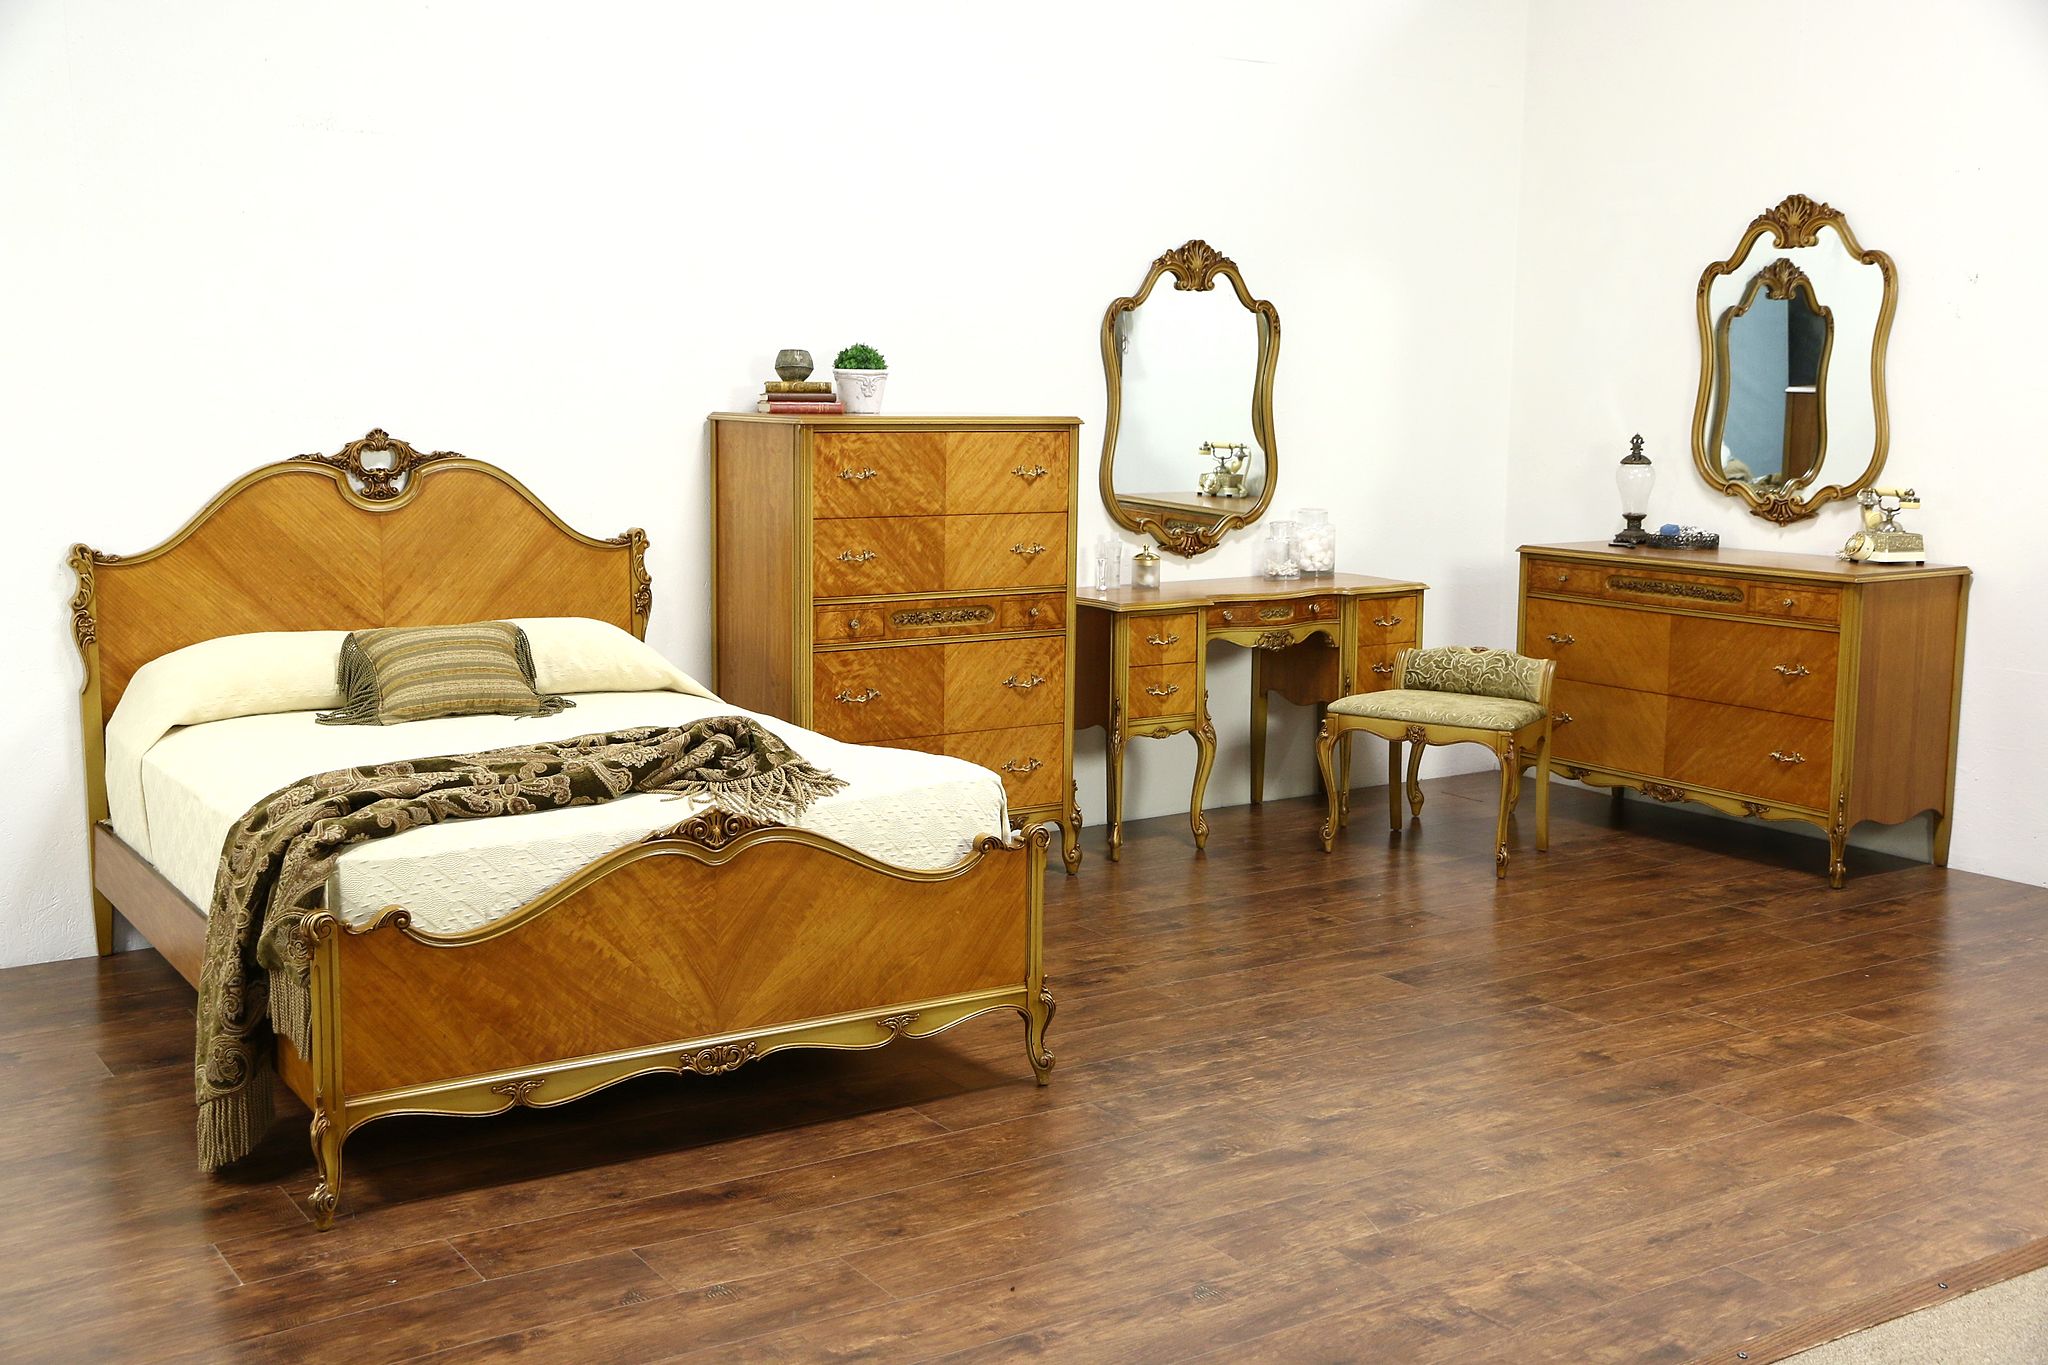 1940's vintage bedroom furniture